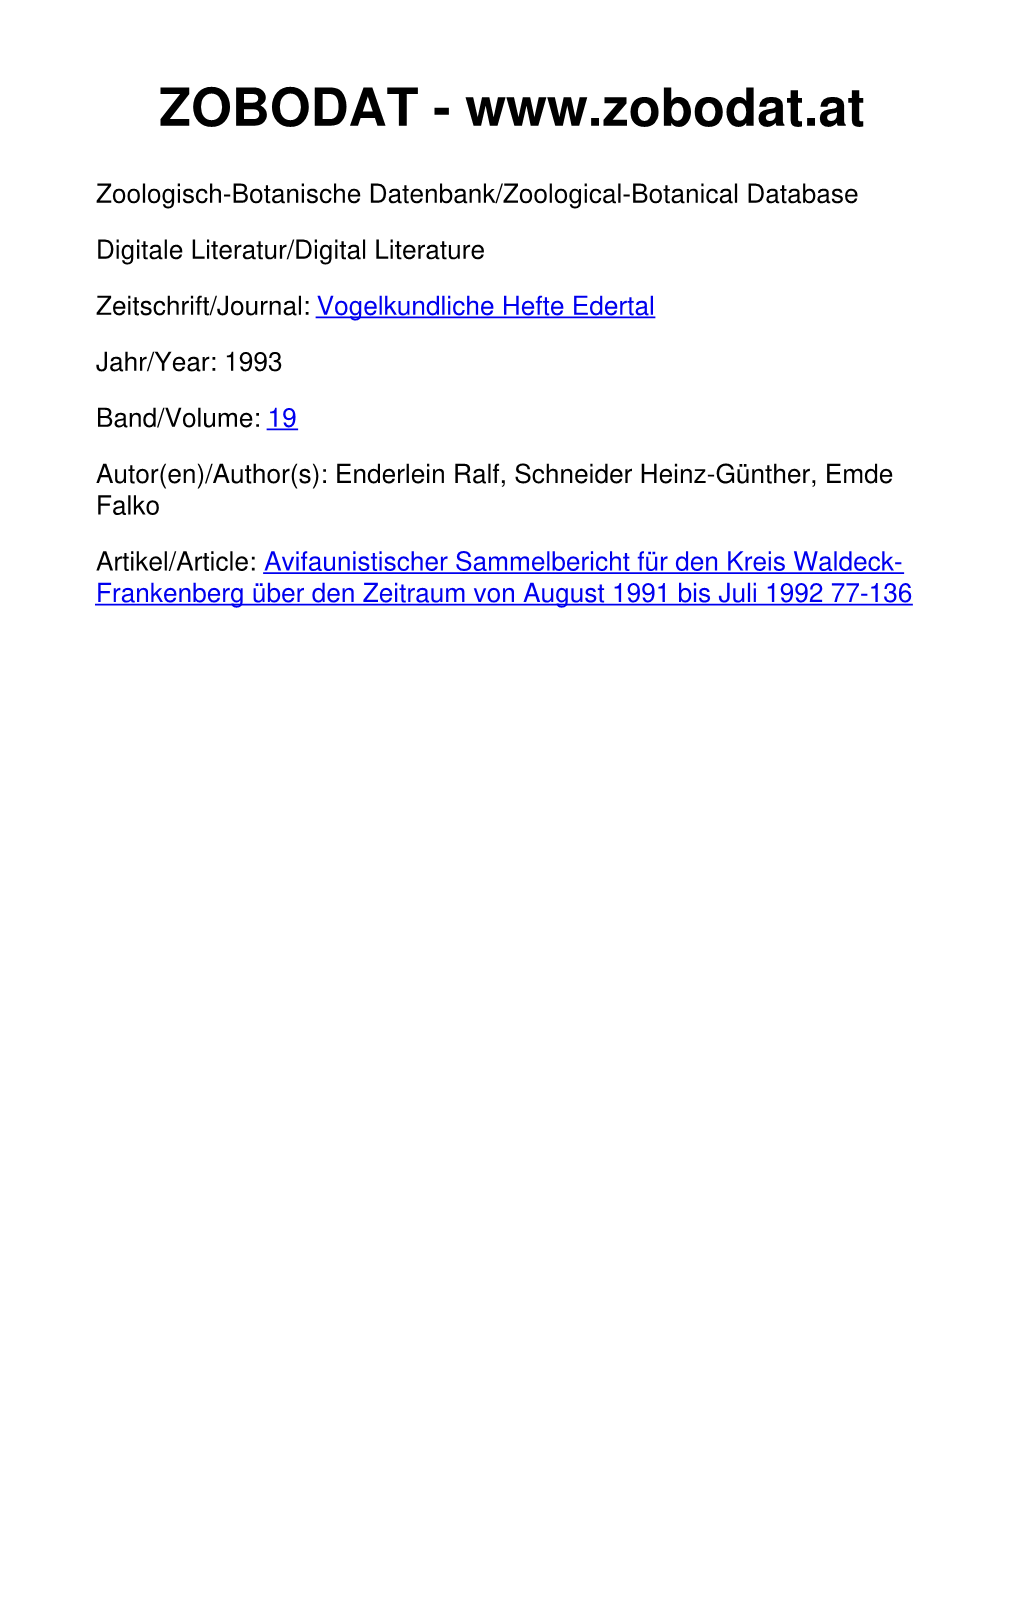 Avifaunistischer Sammelbericht Für Den Kreis Waldeck- Frankenberg Über Den Zeitraum Von August 1991 Bis Juli 1992 77-136 Vogelkundliche Hefte Edertal 19 (1993): S